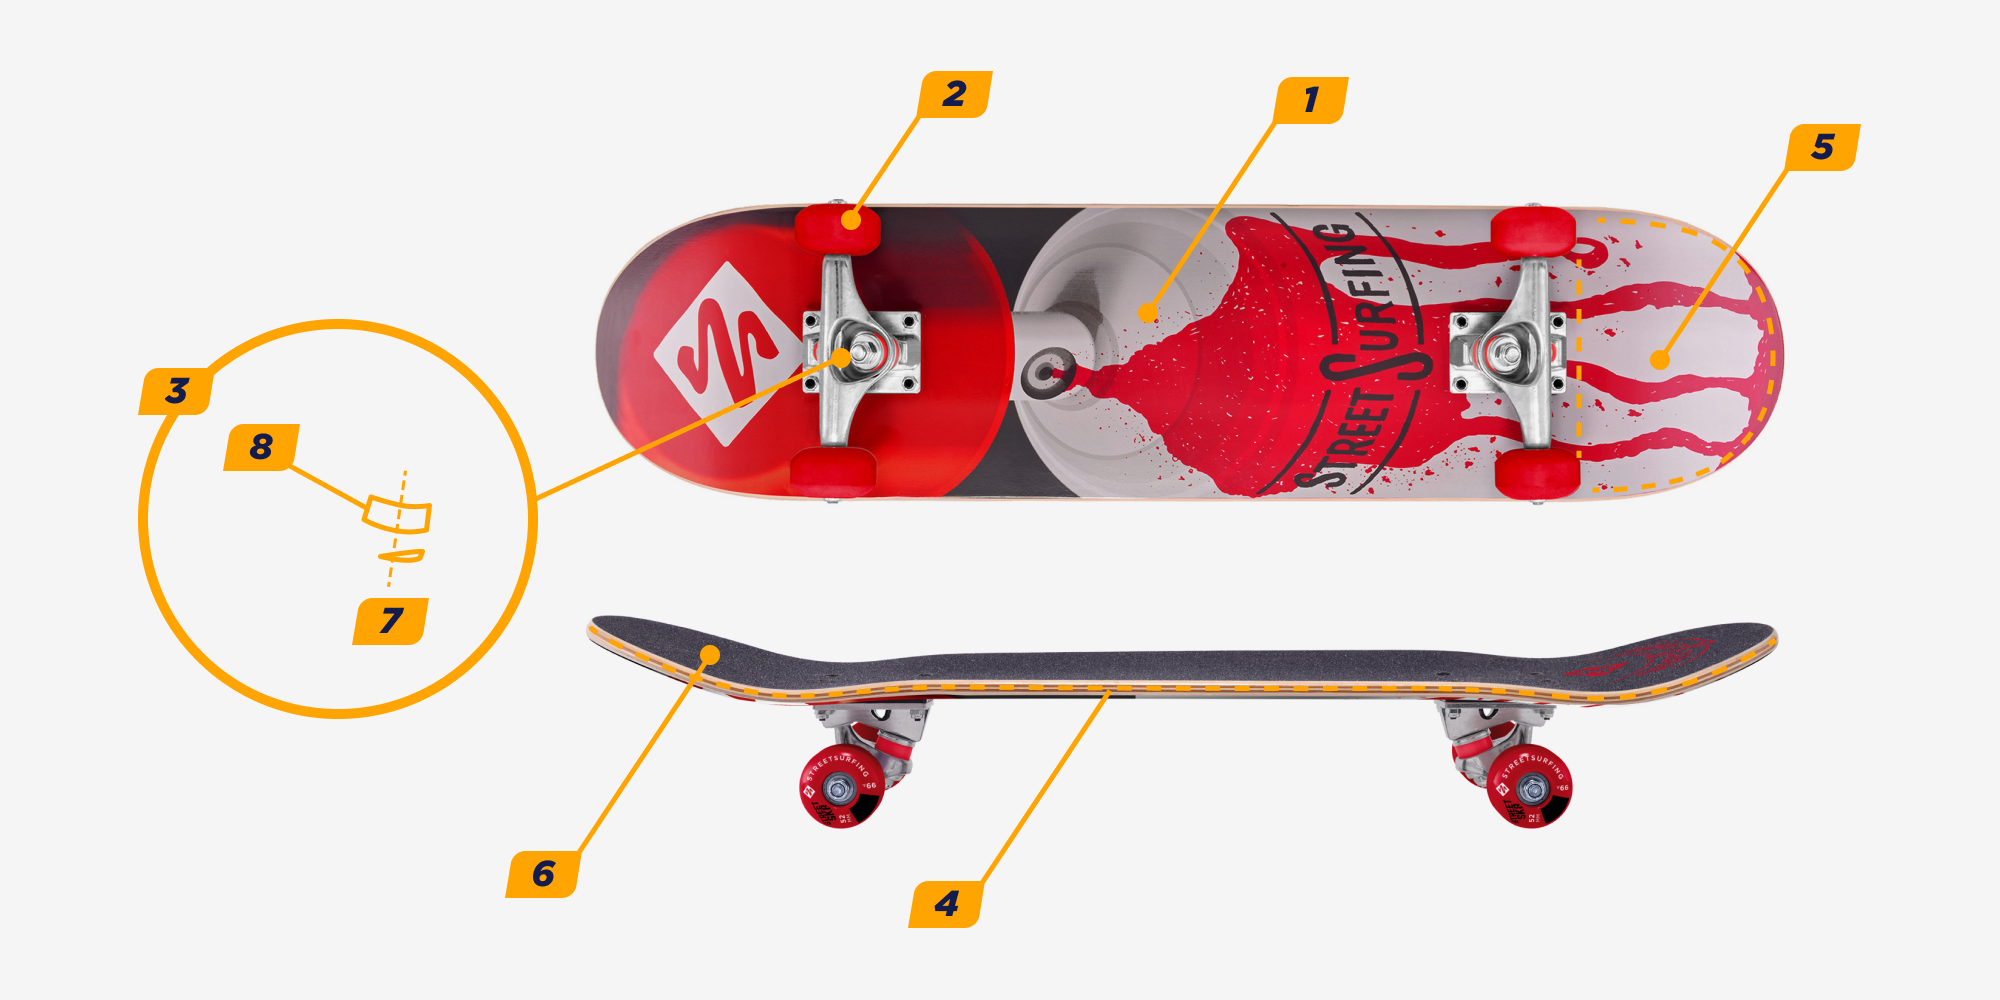 Конструкция скейтборда и его основные характеристики